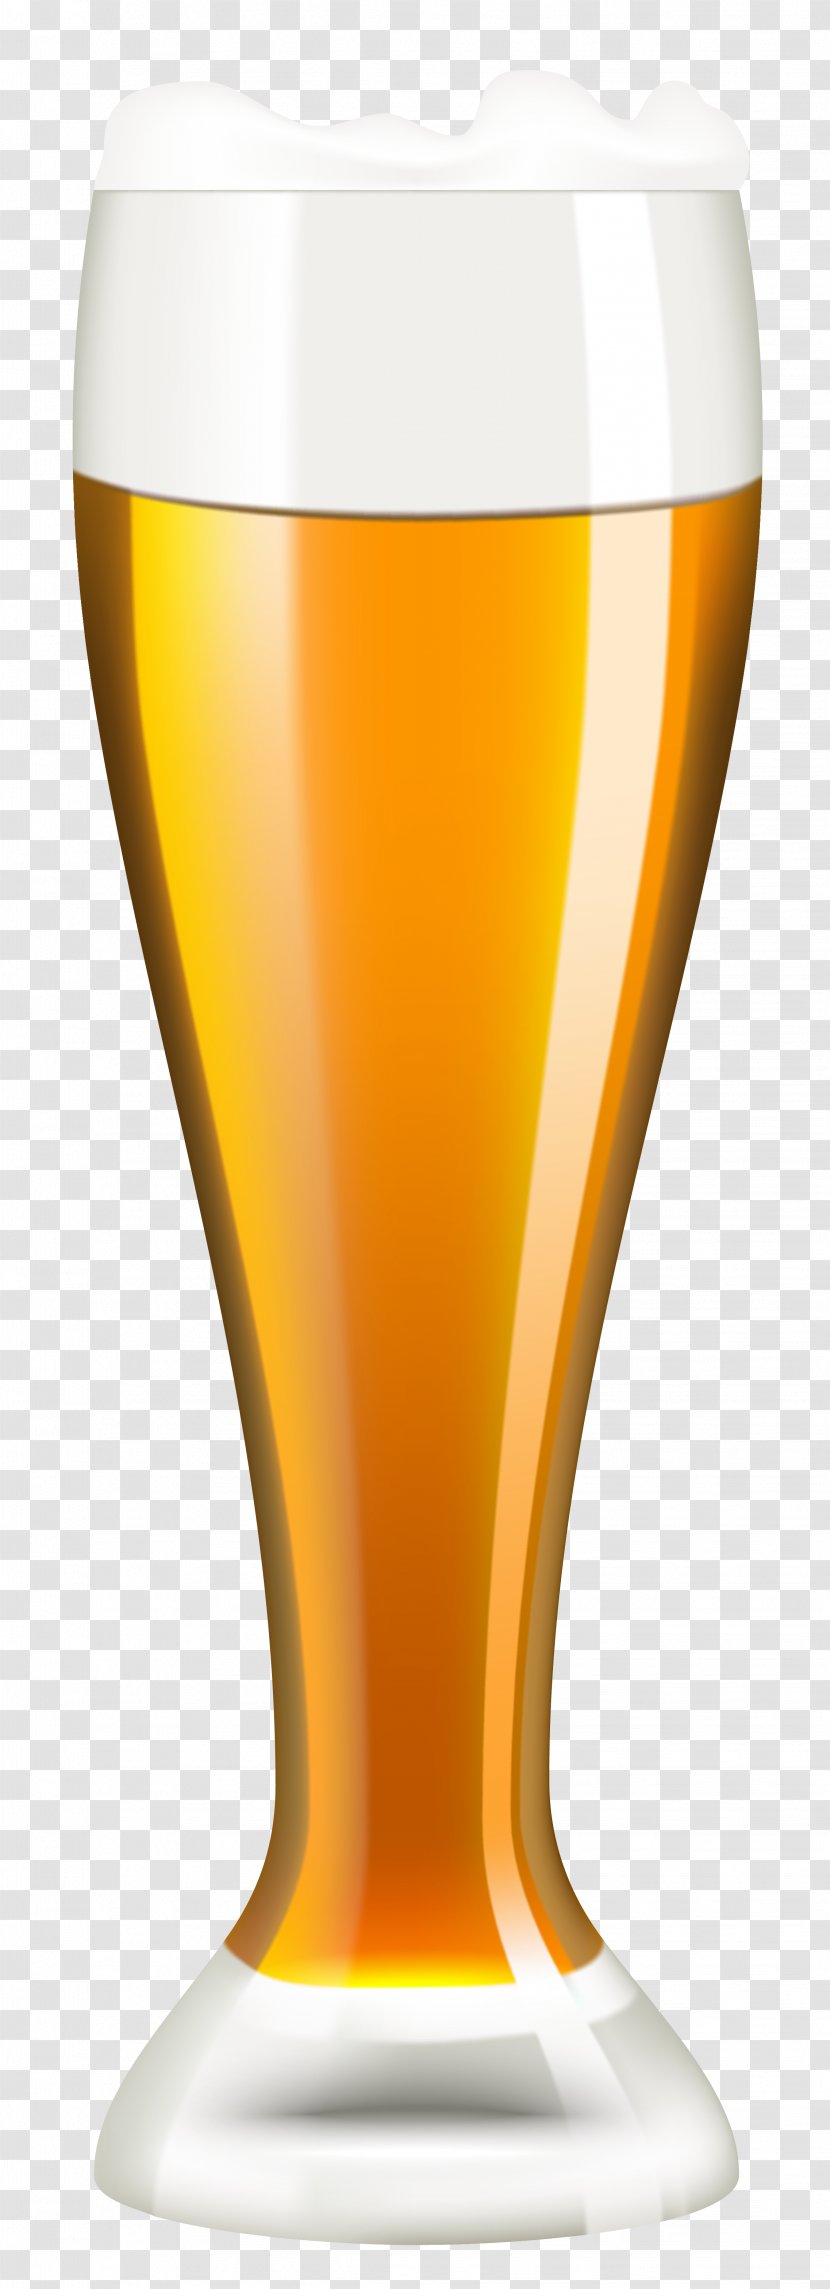 Beer Glasses Cocktail Transparent PNG